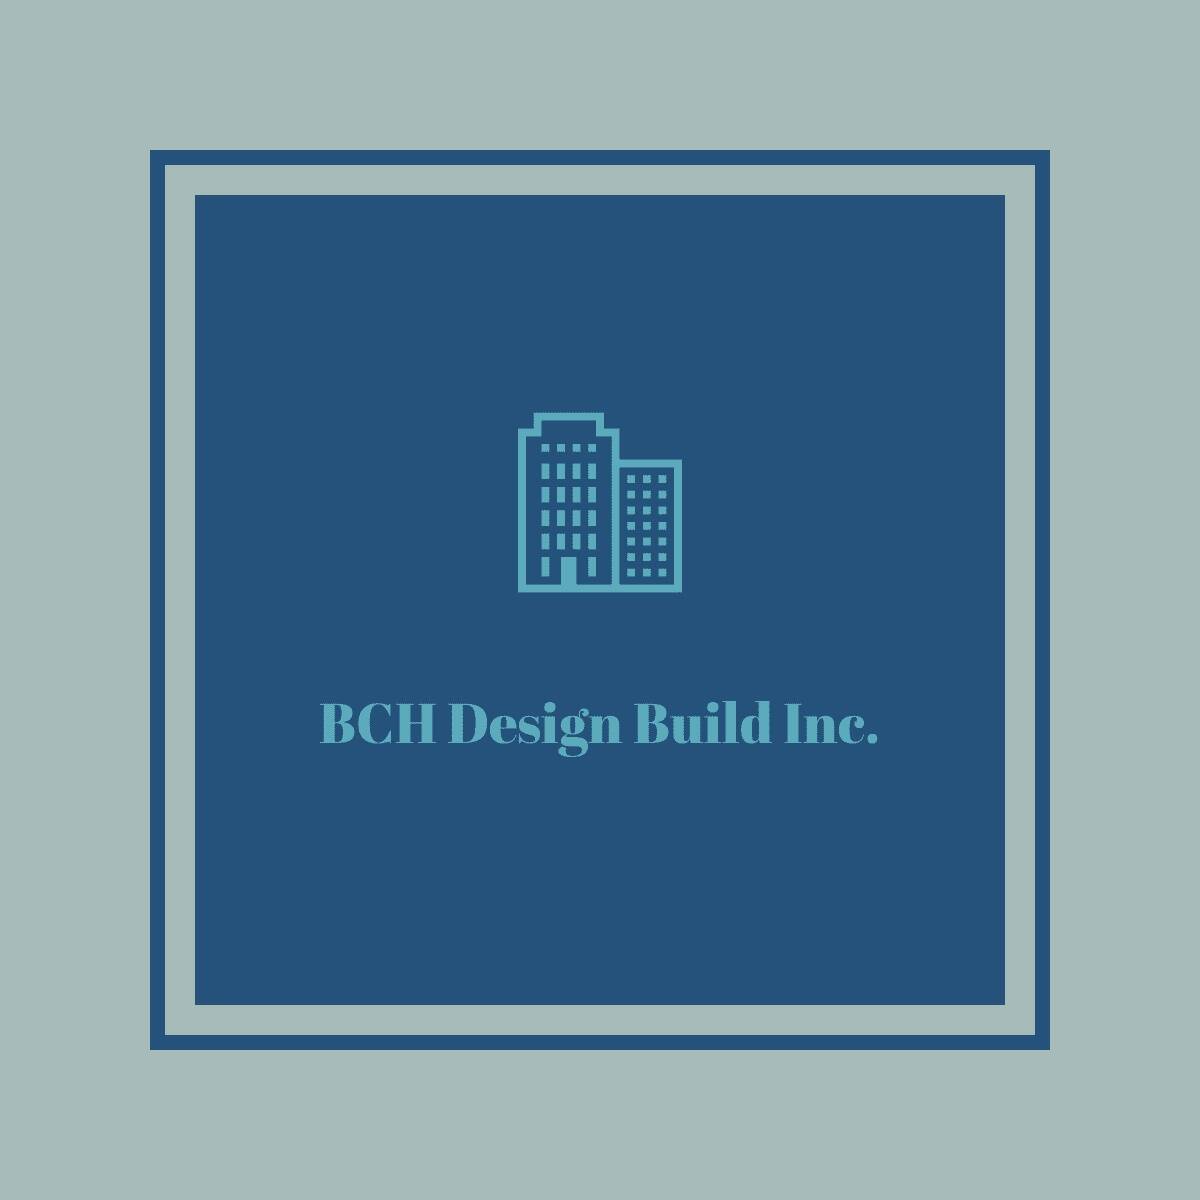 BCH Design Build Inc